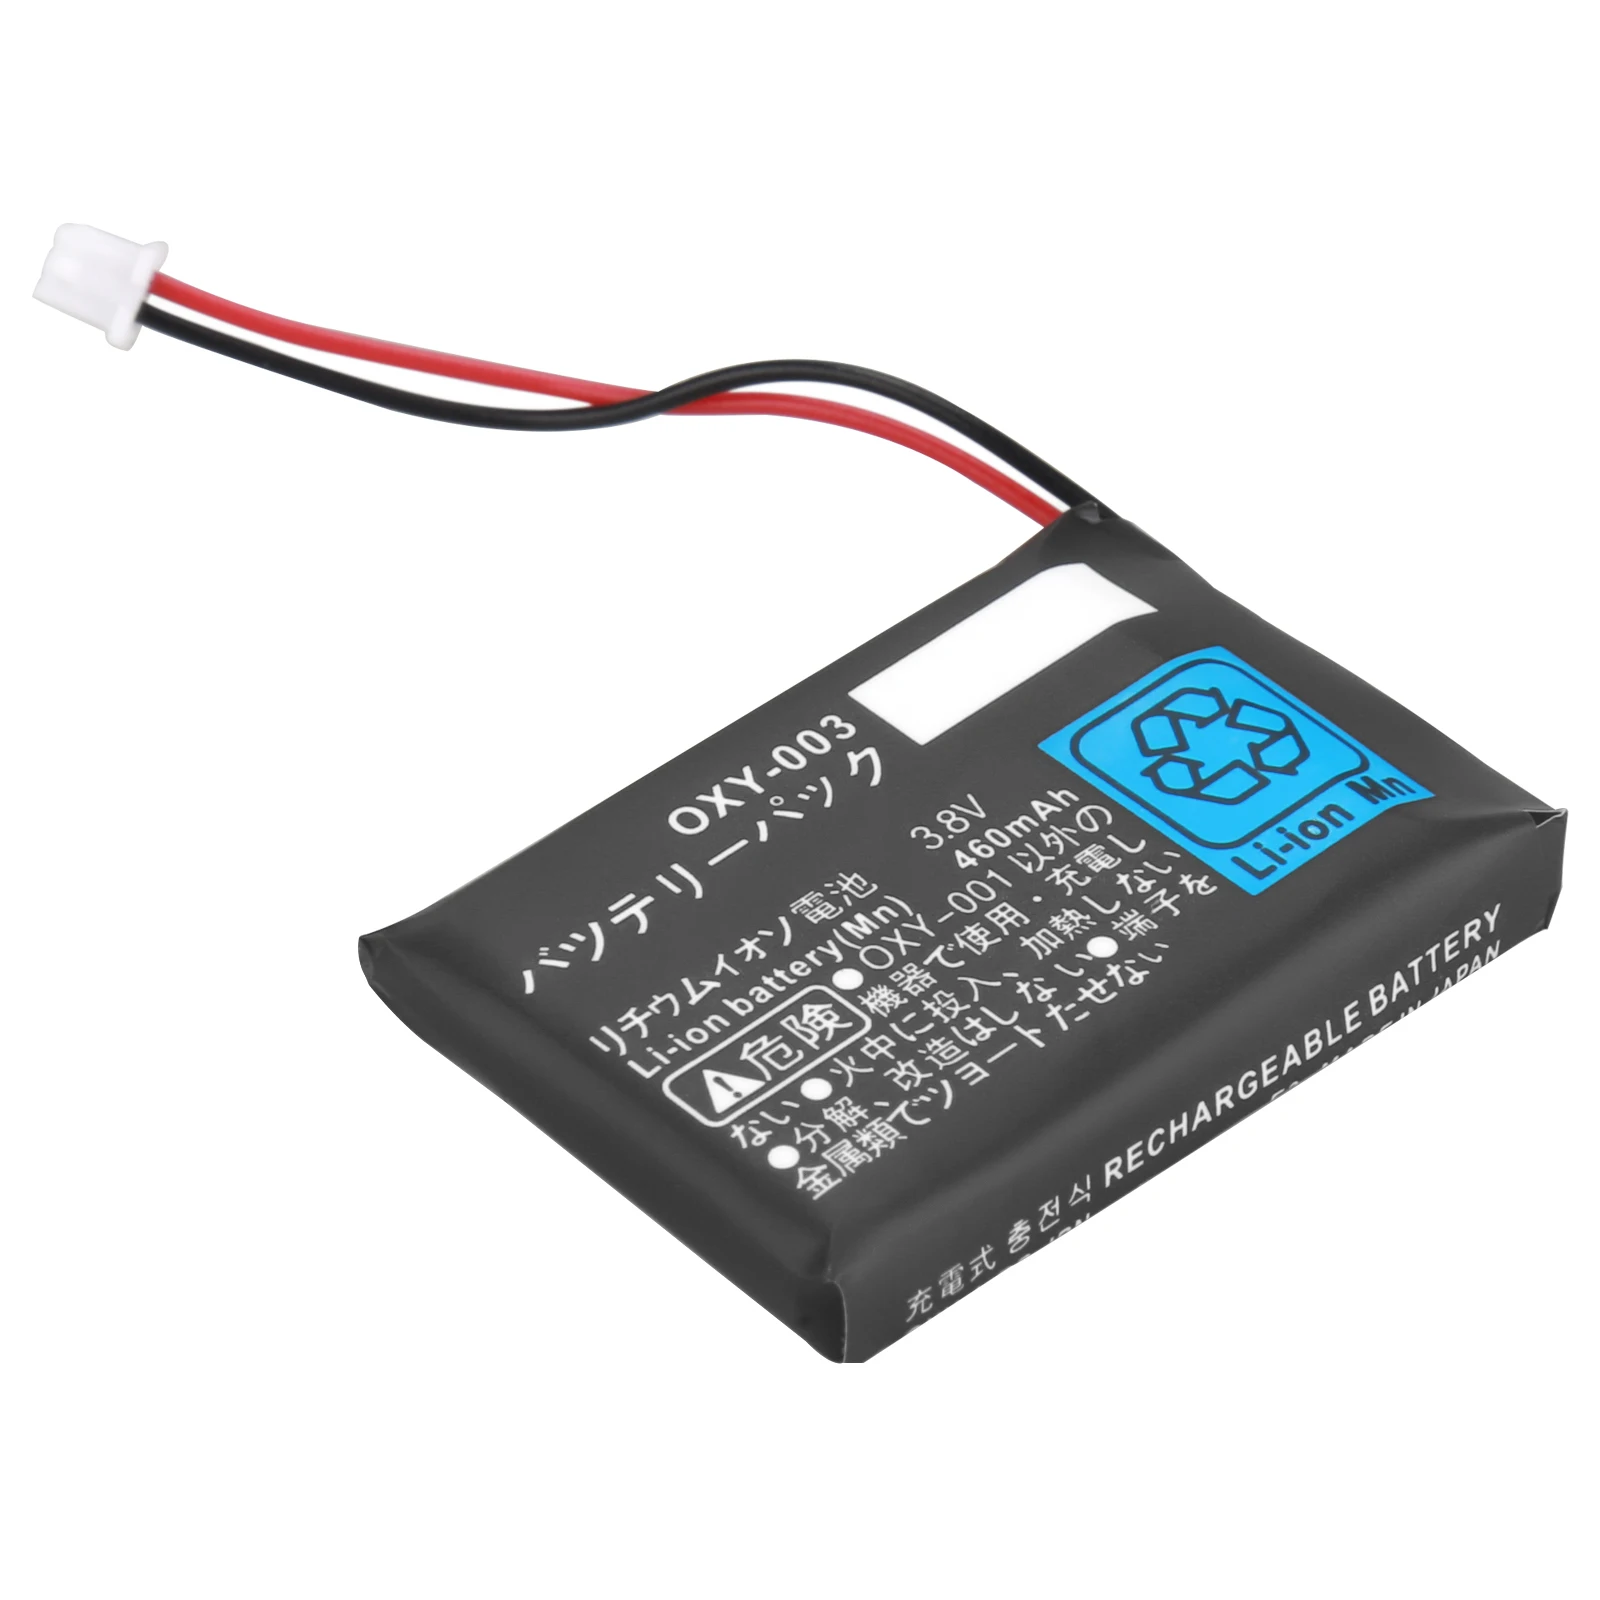 テレビ/映像機器 その他 OXY-003 460 mAh 3.8V Rechargeable Lithium-ion Battery Kit Pack for Nintendo  GBM Game Boy Micro Batteries